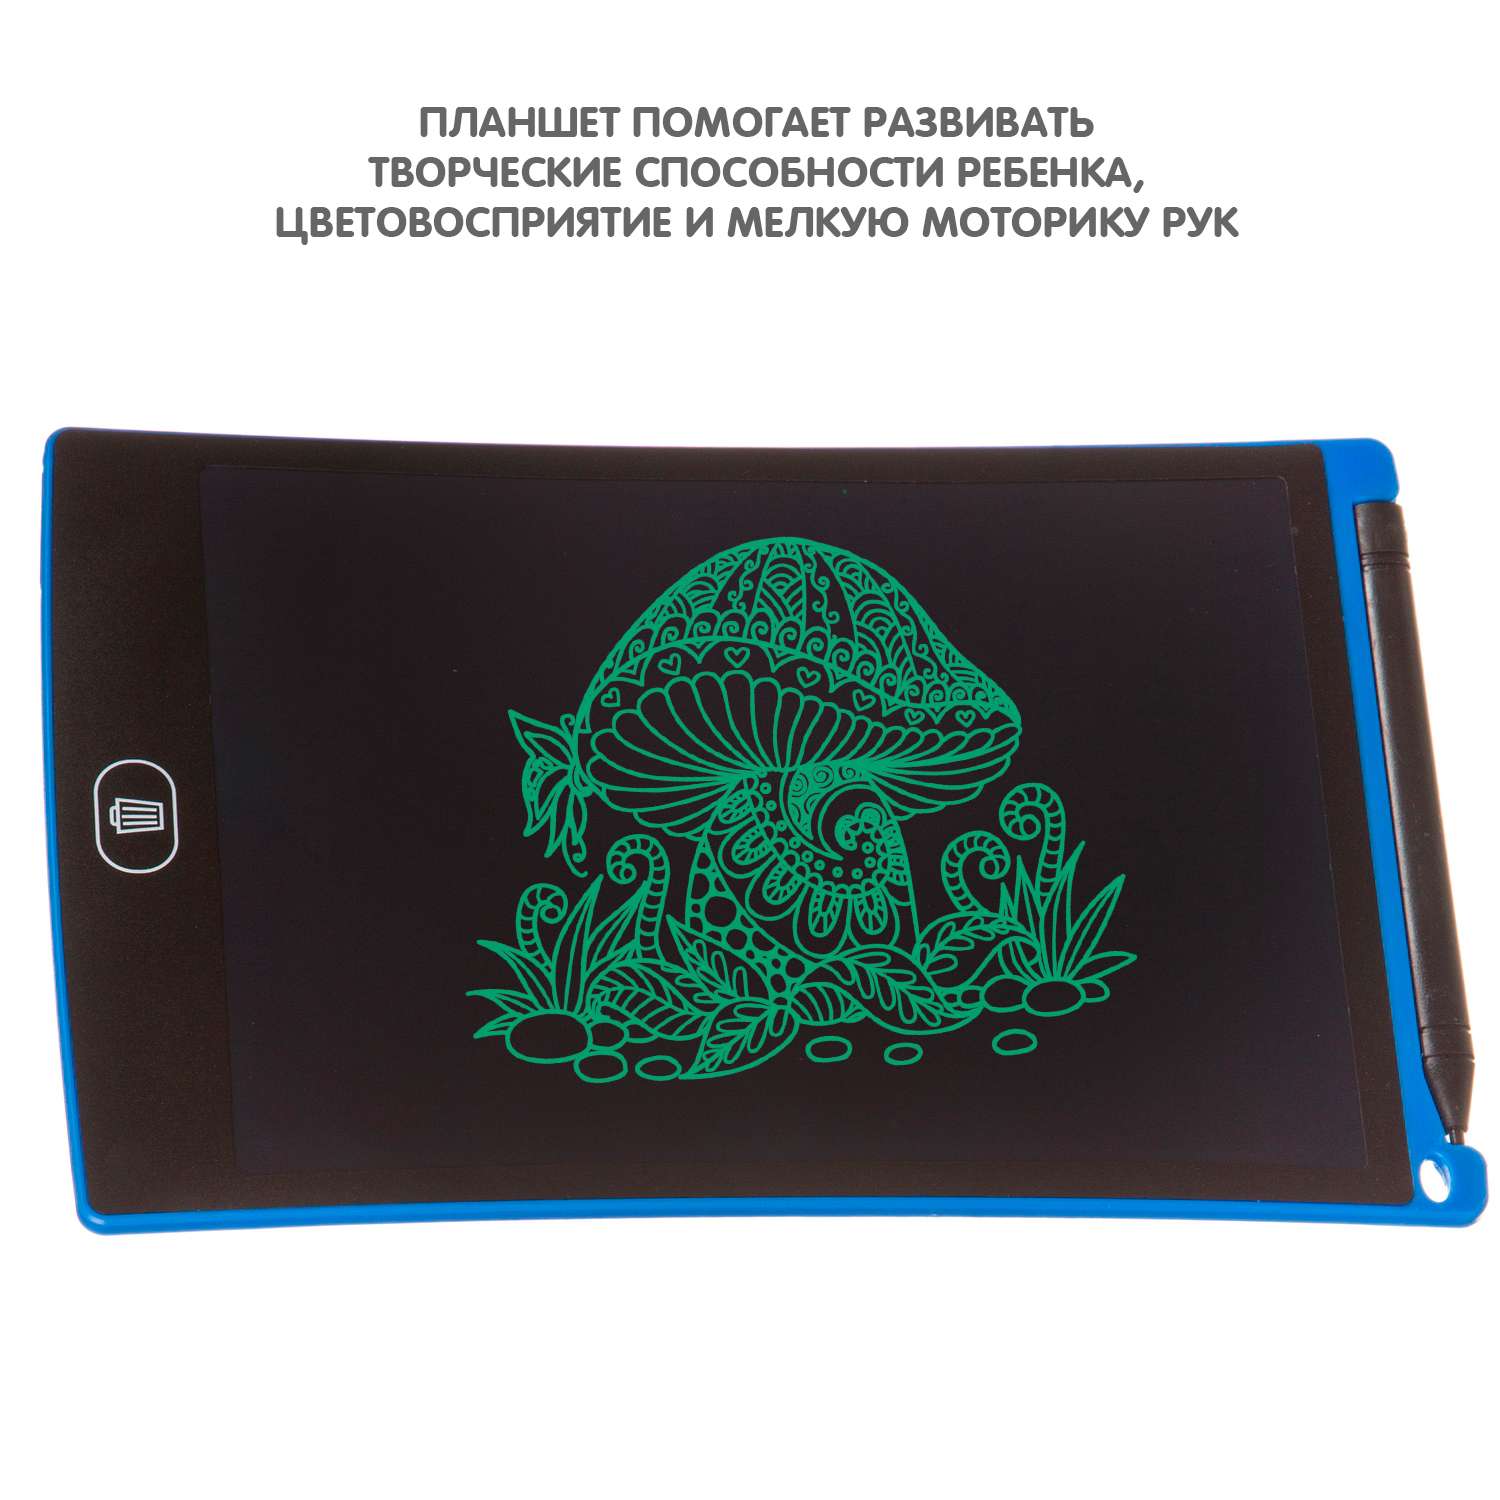 Обучающий планшет BONDIBON монохромный с жидкокристаллическим экраном 8 дюймов синий корпус - фото 8